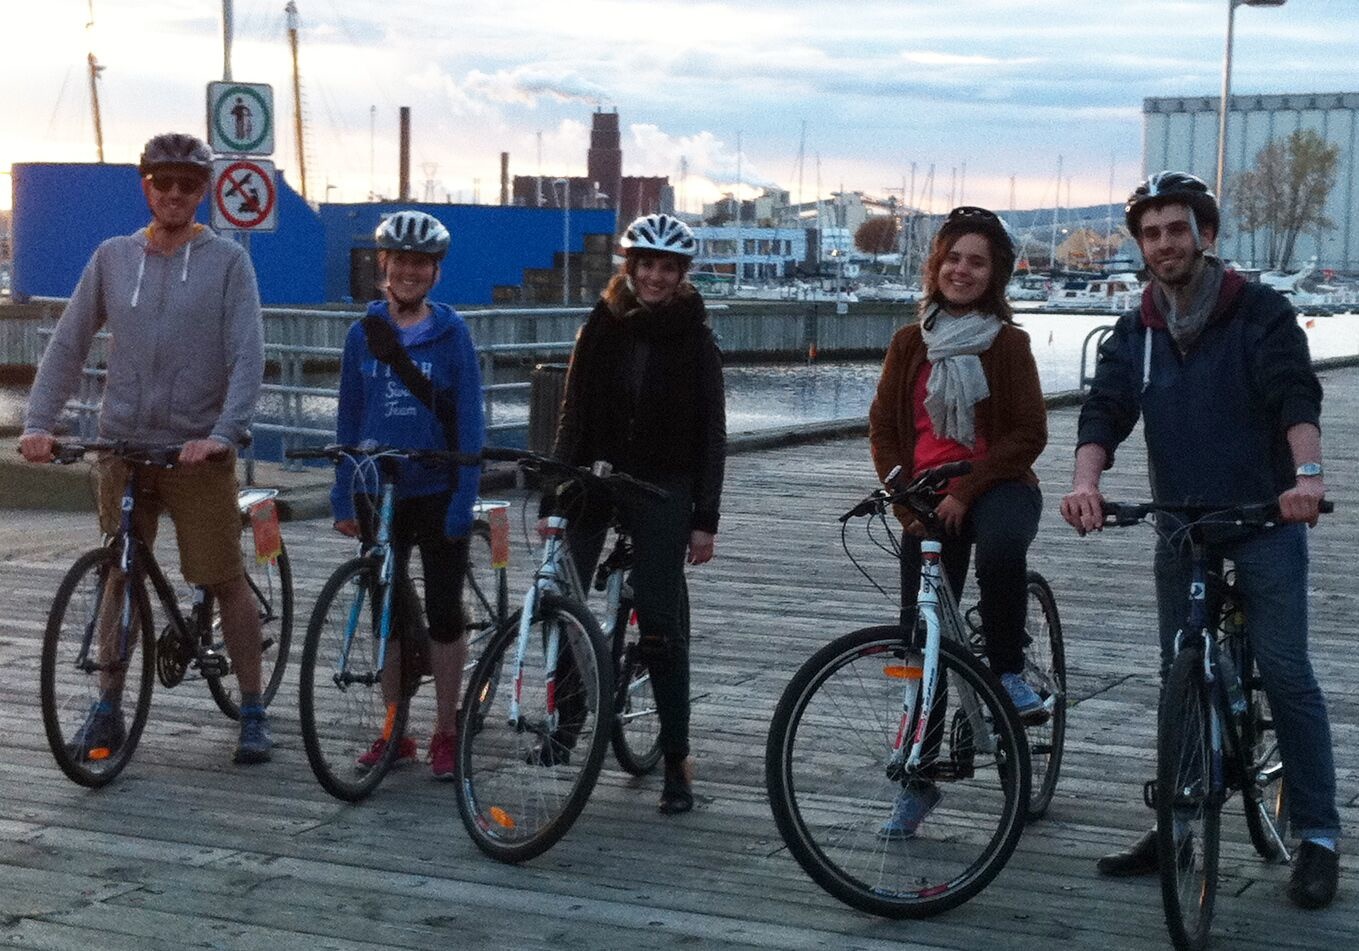 Tour guidé à vélo Québec au fil de l'eau, 65$